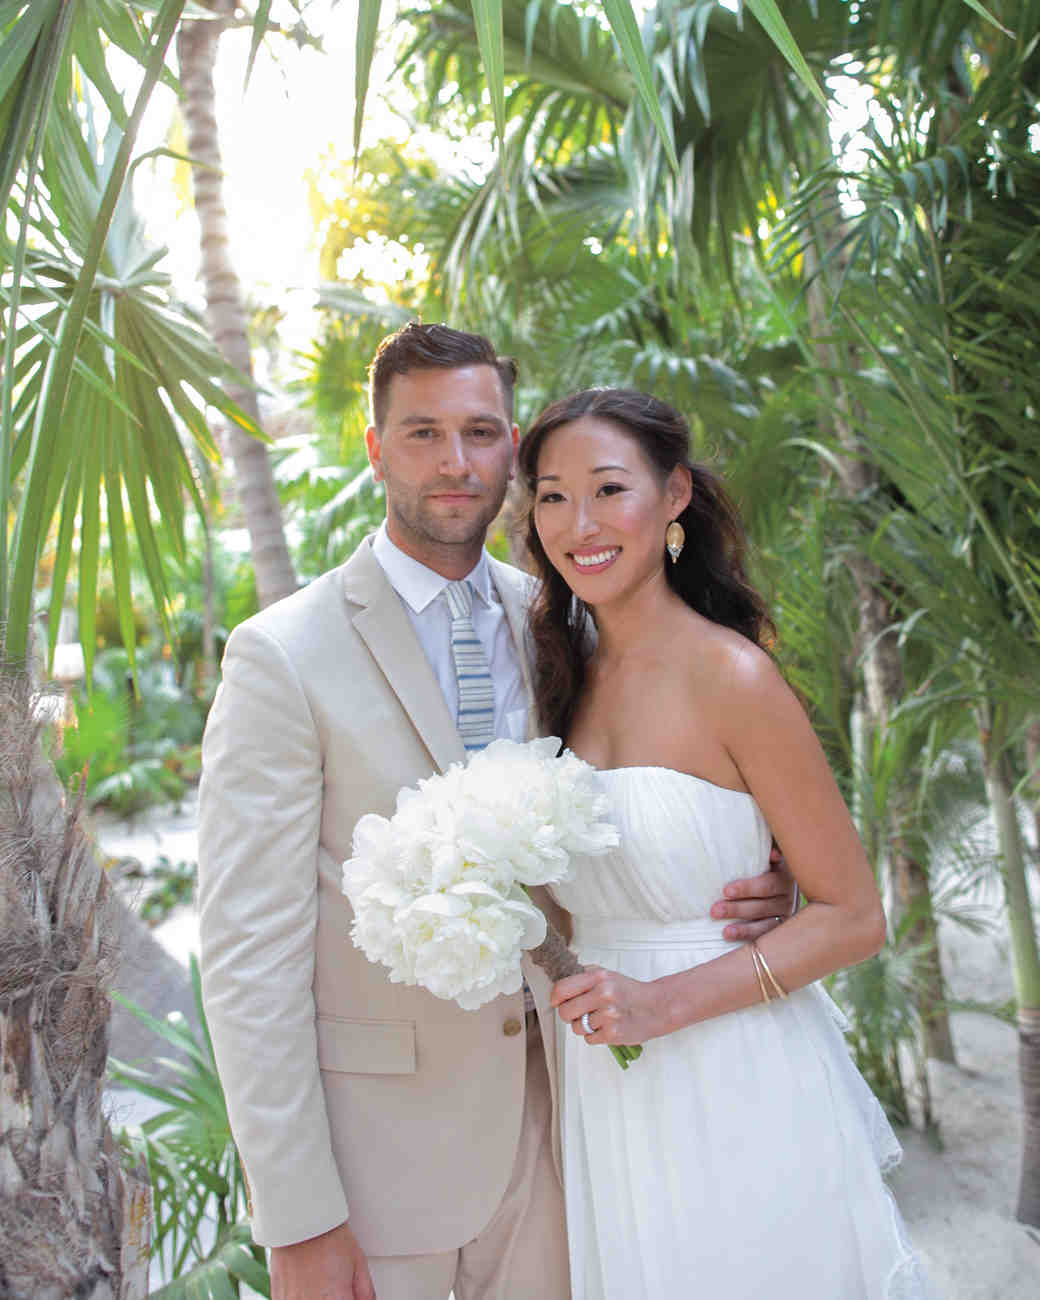 A Beach Destination Wedding In Shades Of Blue In Mexico Martha